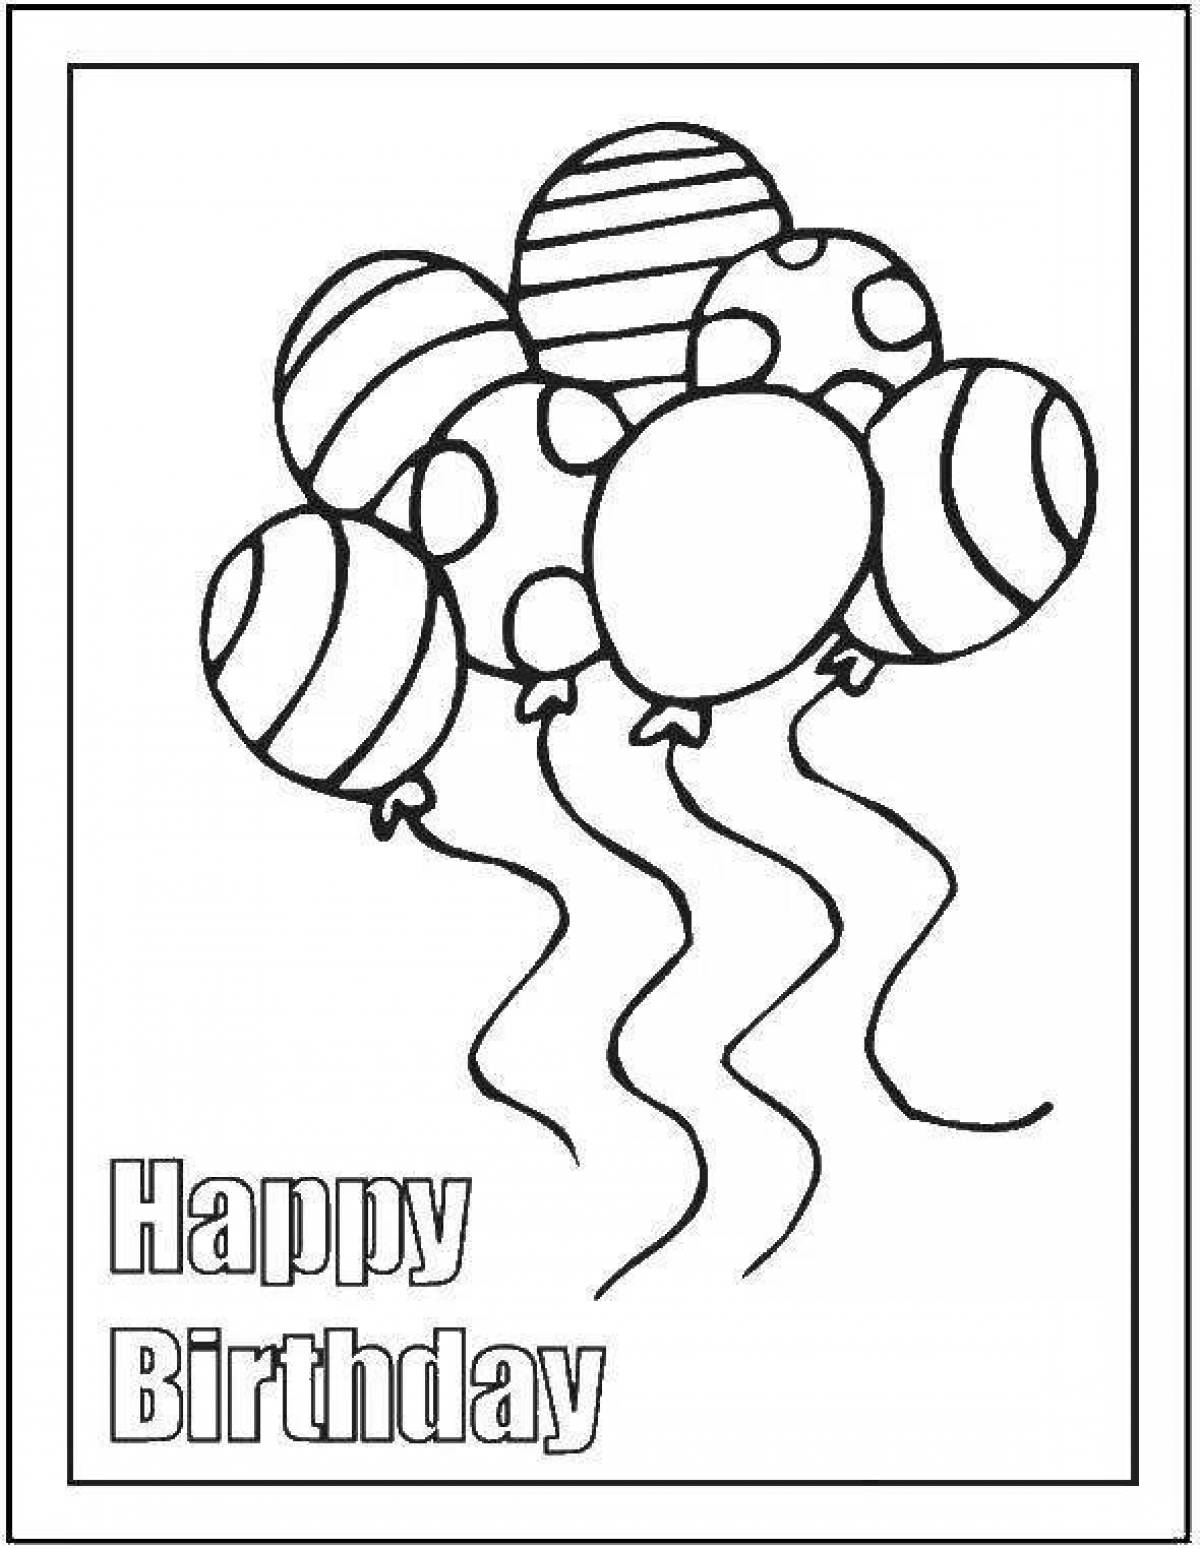 Открытка раскраска с днем рождения, воздушные шары. Распечатать картинку-раскраску